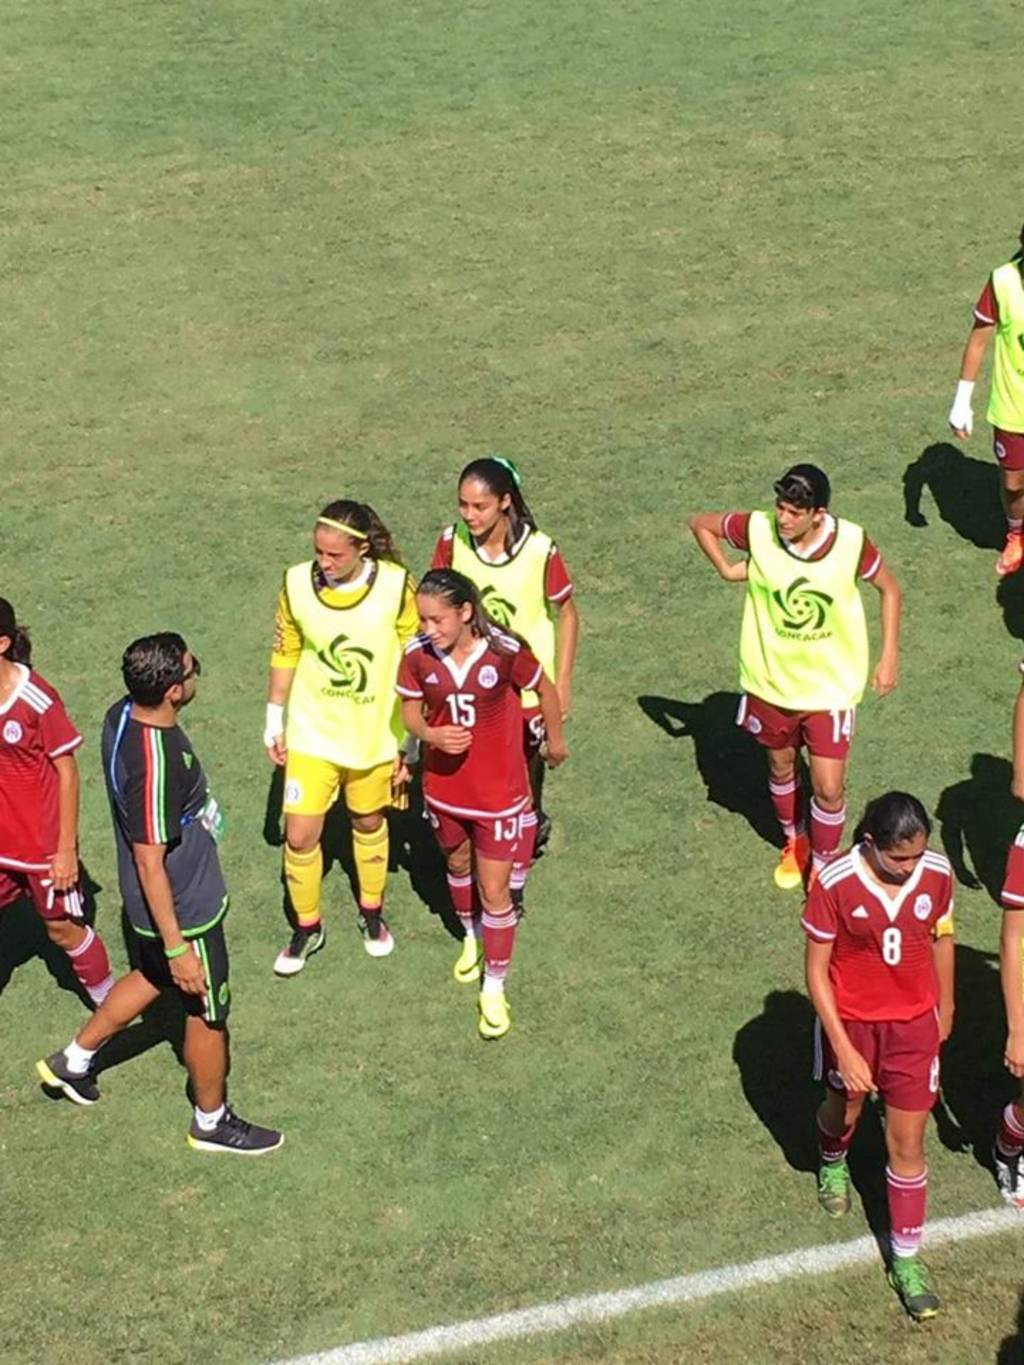 La jugadora de Torreón (15) fue titular en el duelo ante las caribeñas y respondió con una anotación. (Especial)